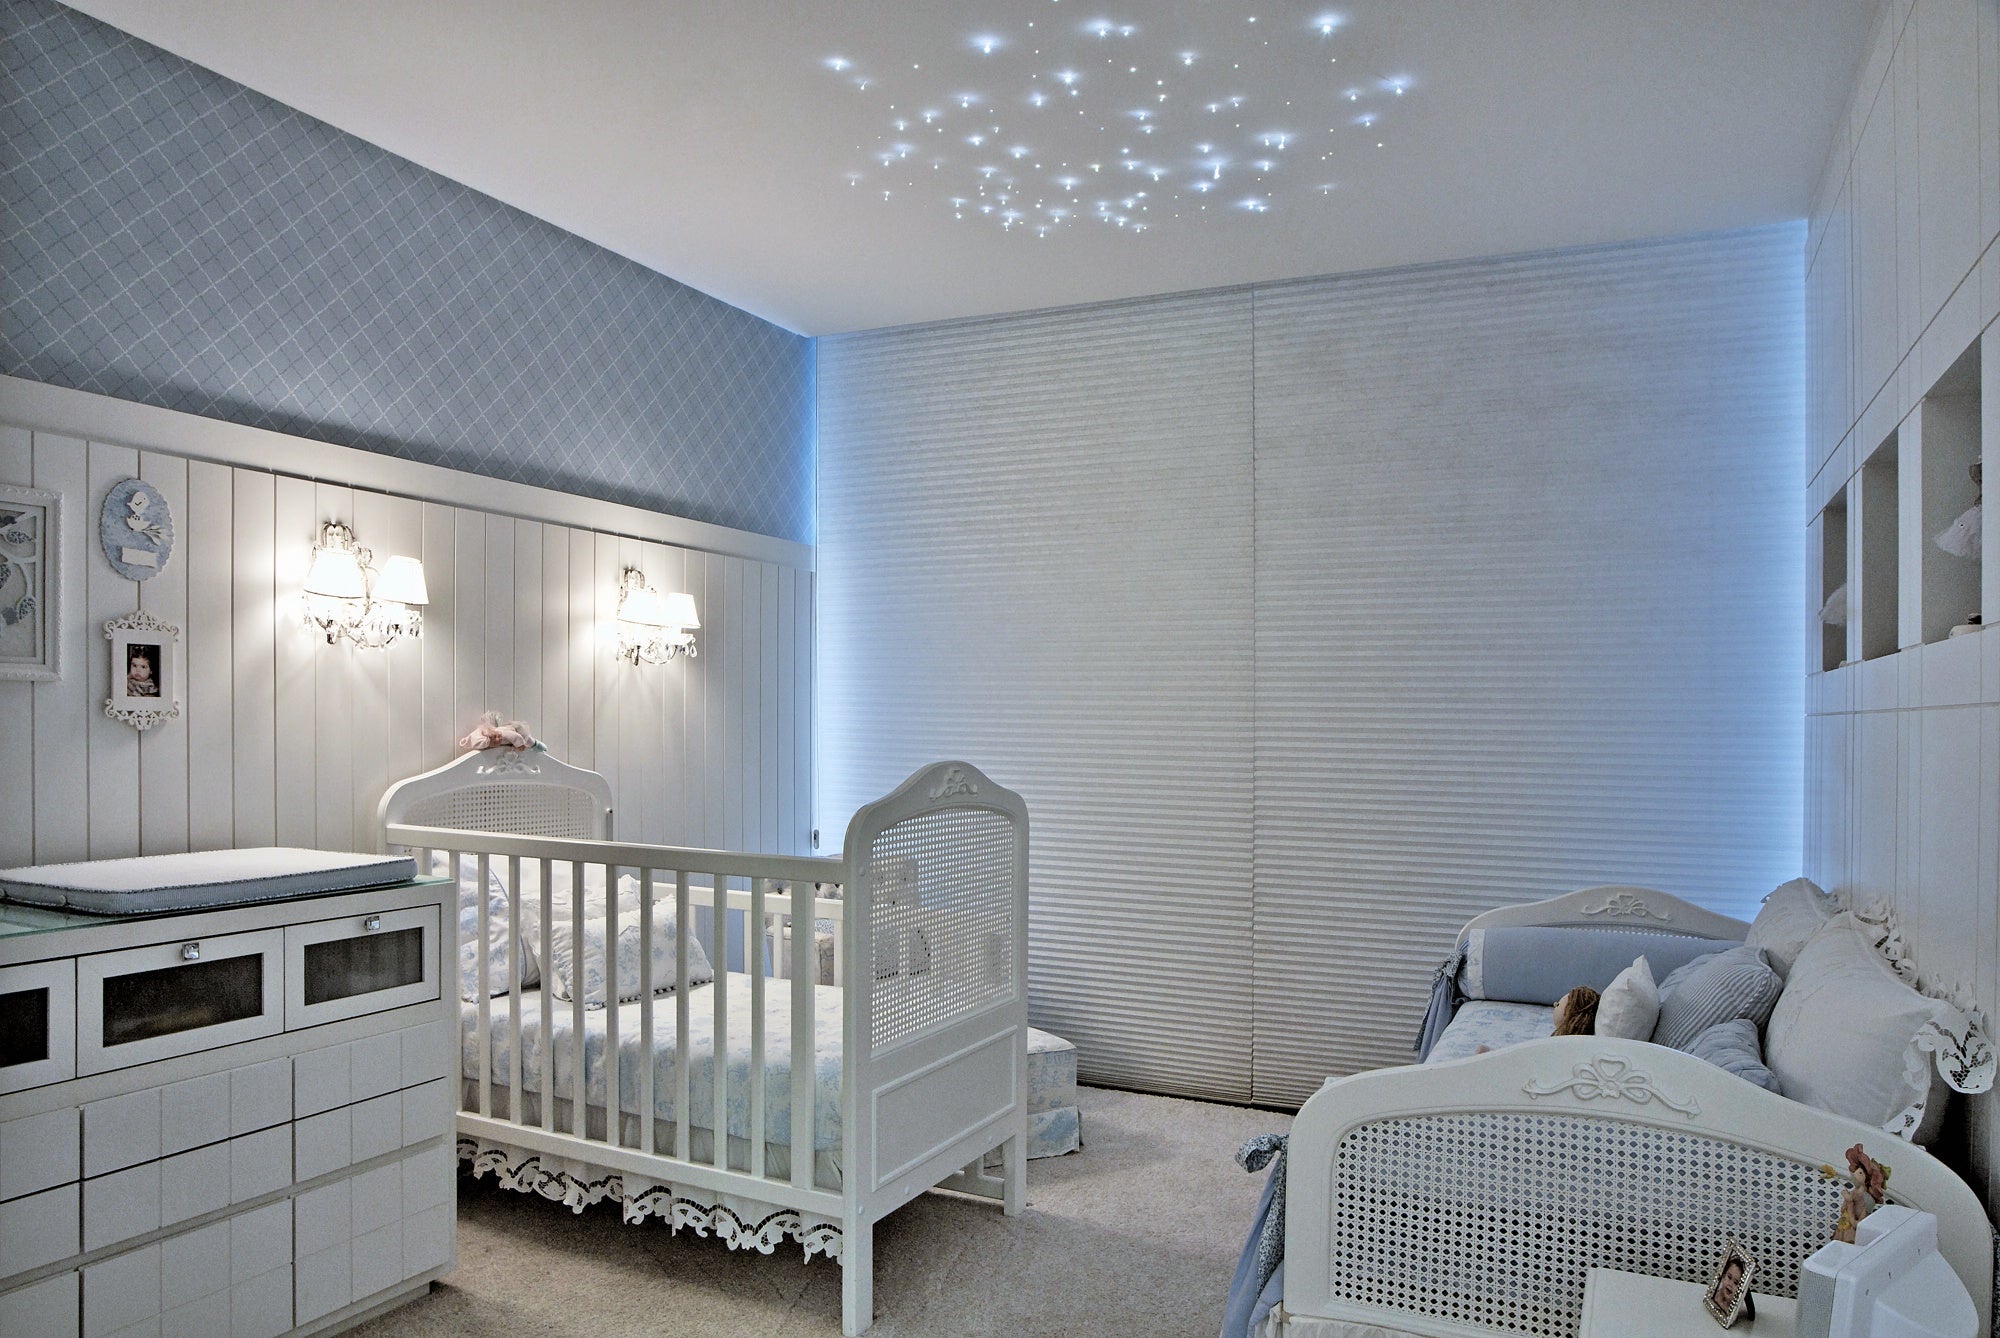 O que é tendência em quartos de bebê?